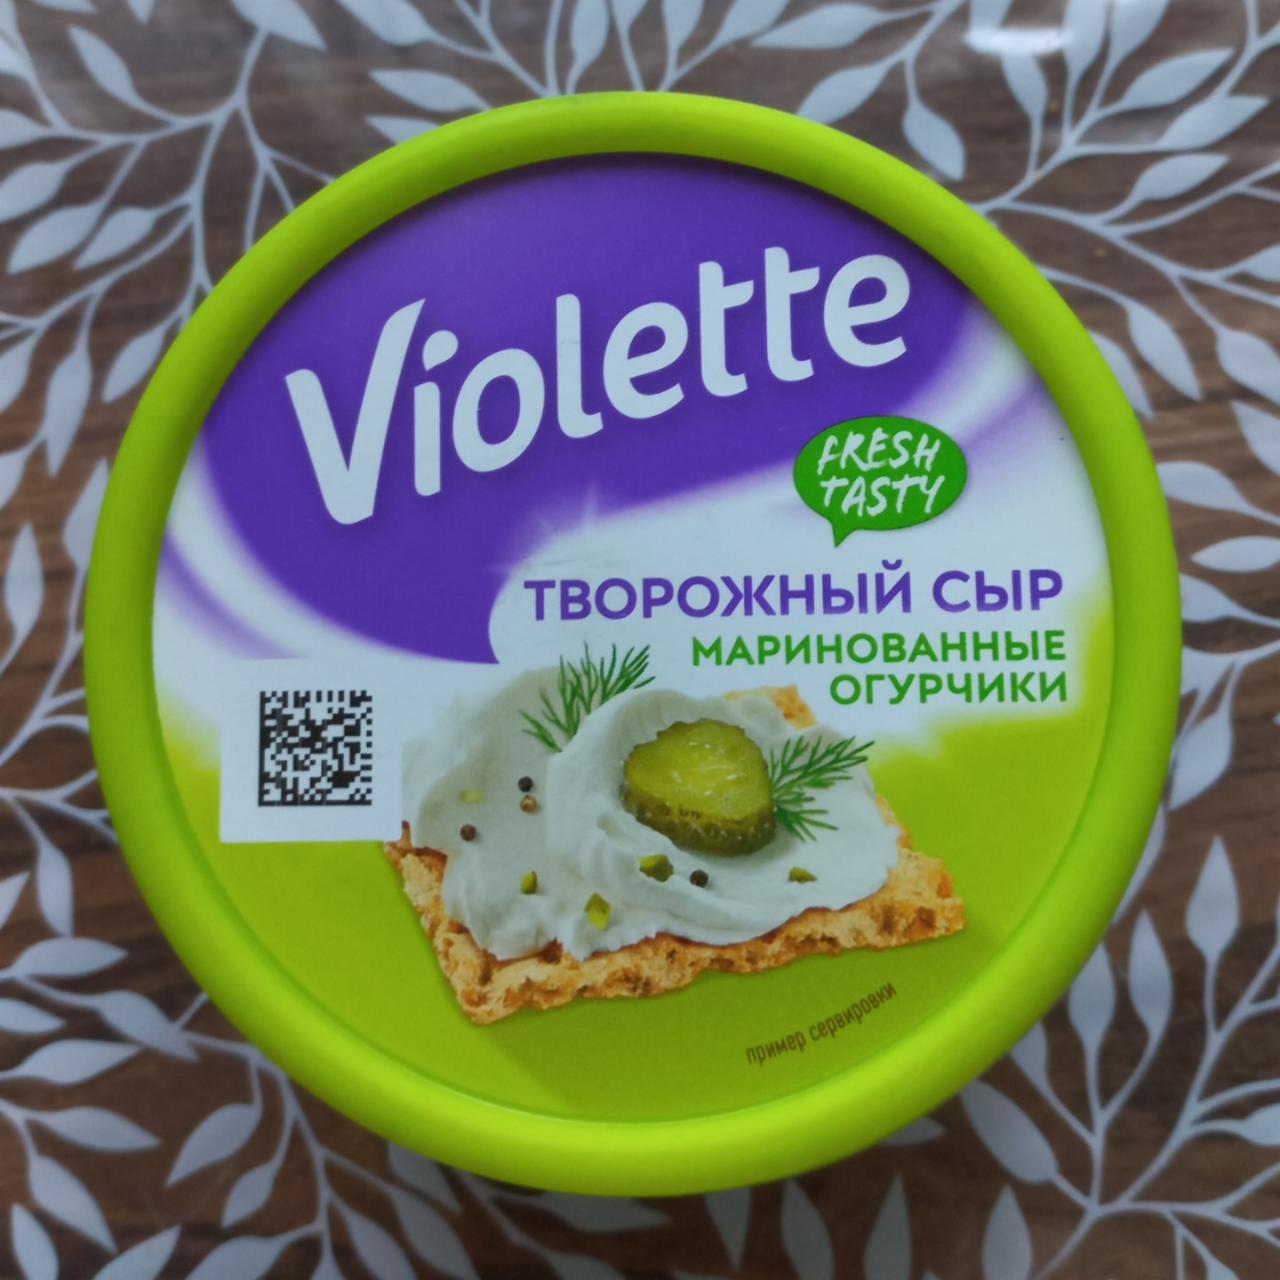 Фото - творожный сыр со вкусом маринованные огурчики Виолетте Violette